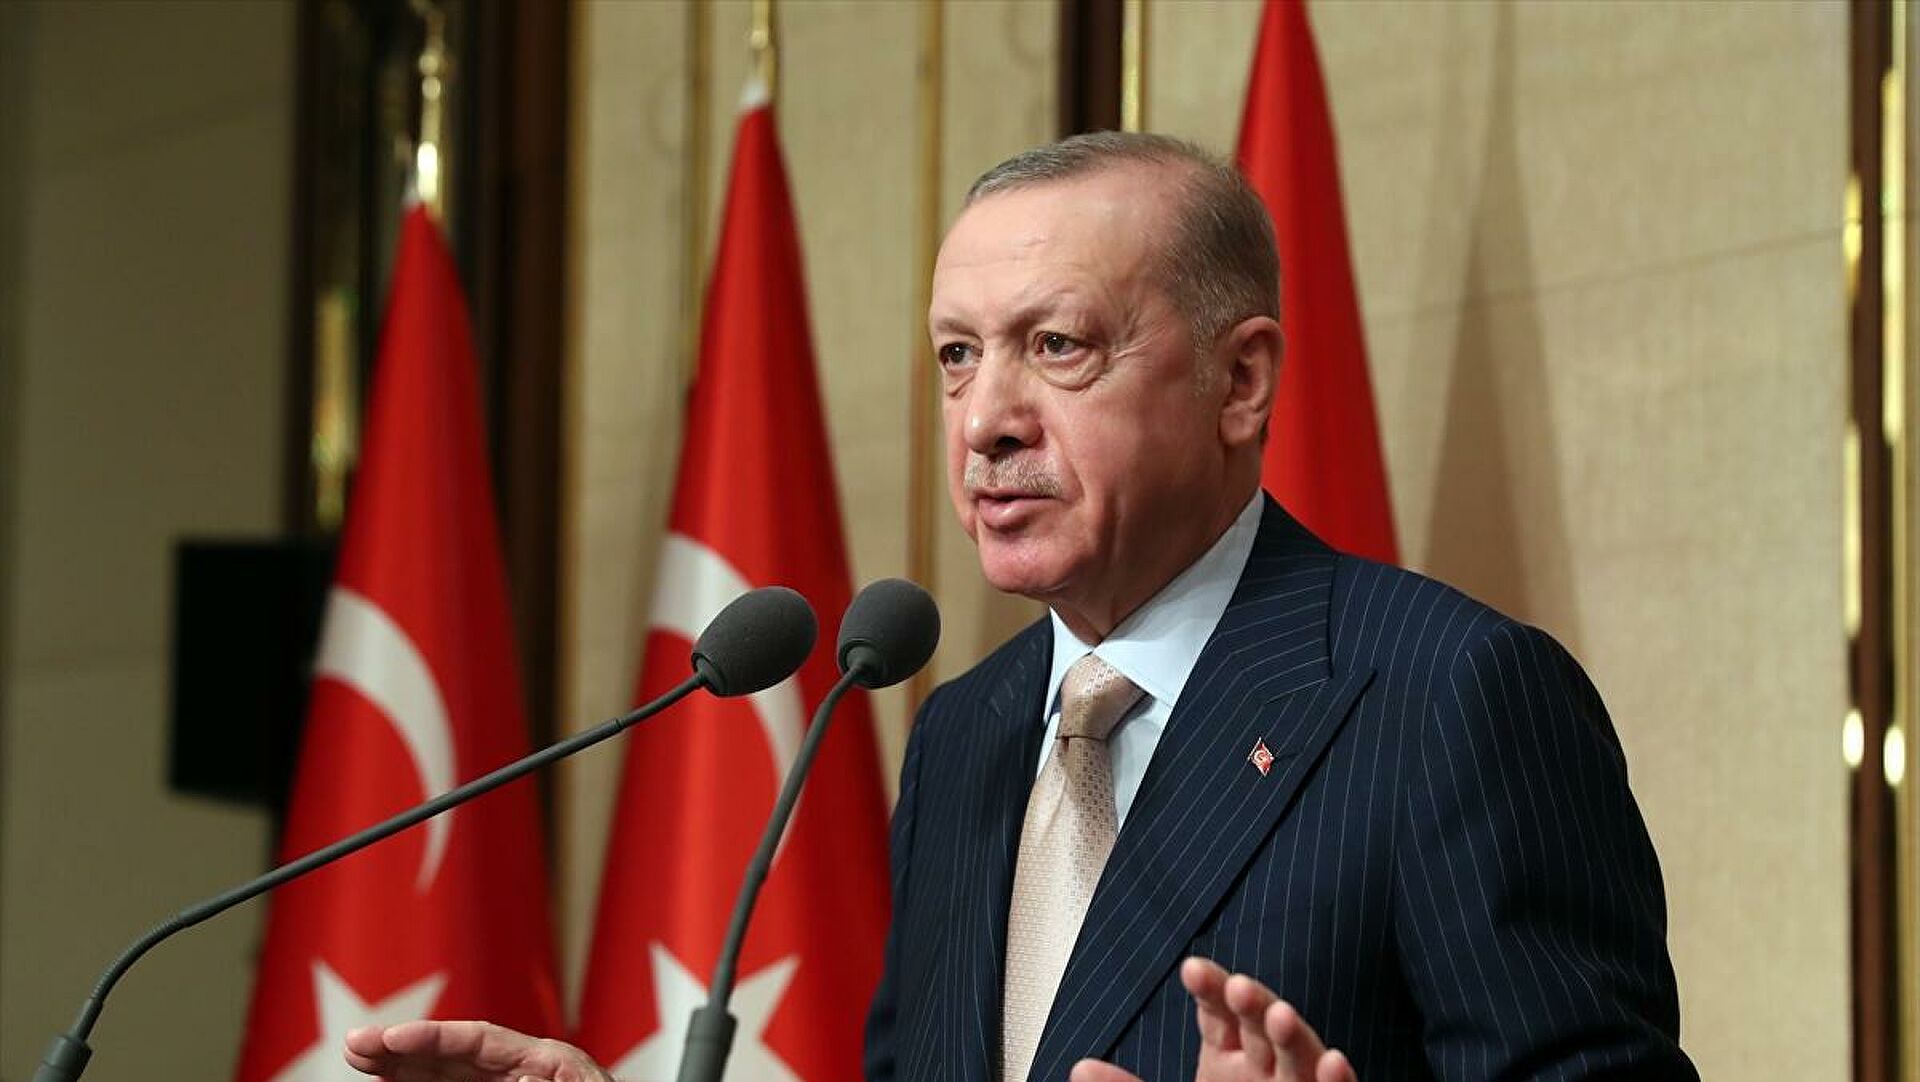 Cumhurbaşkanı Erdoğan: Hayat pahalılığı toplumun bir sorunu; üstesinden geleceğiz